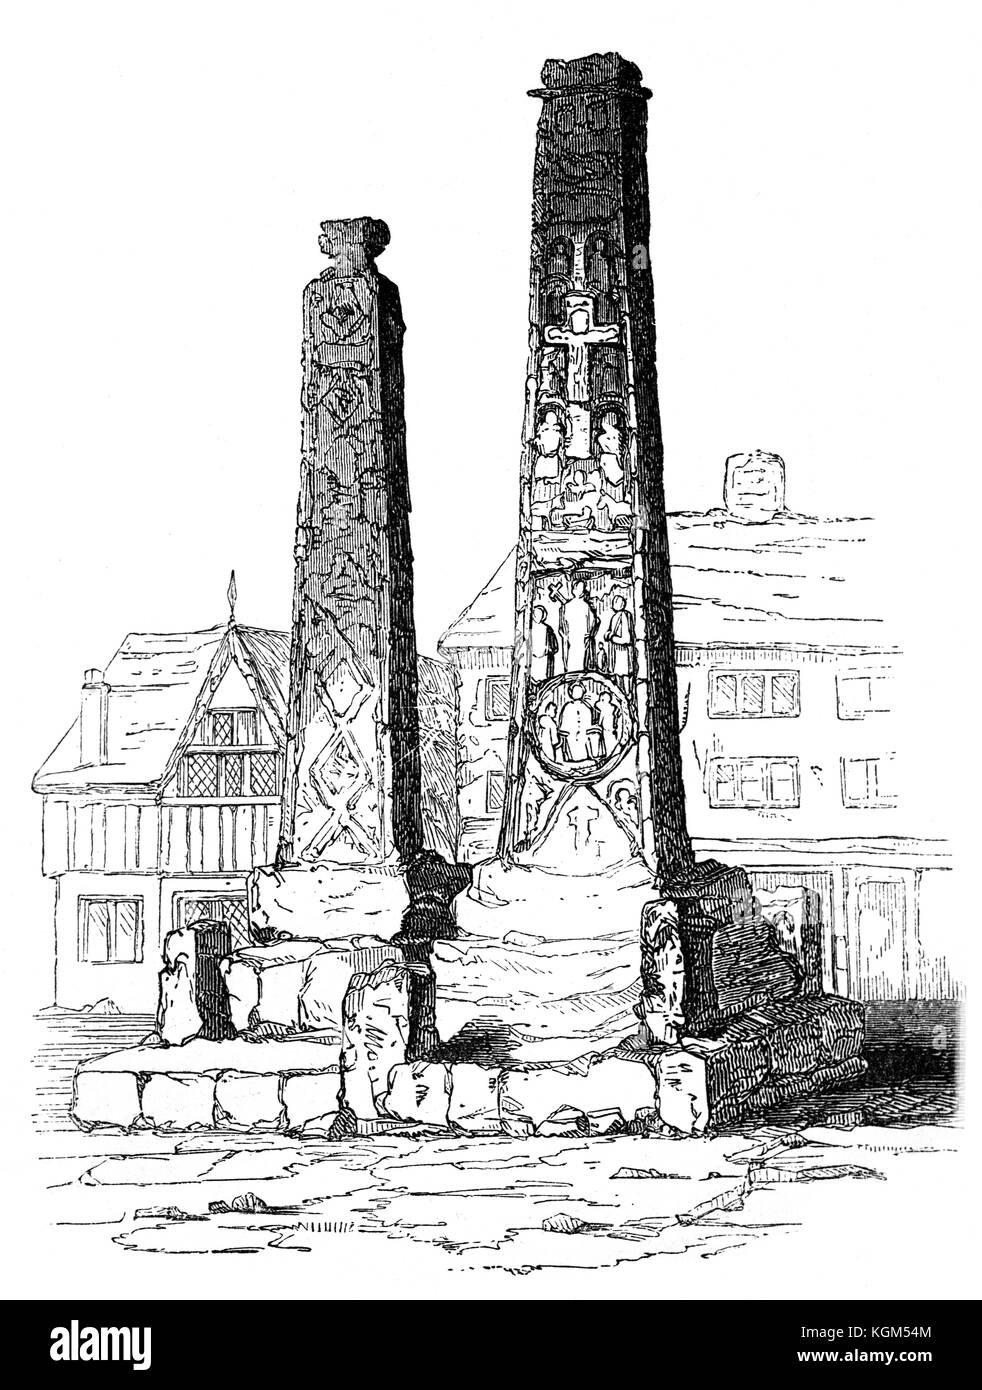 La Croix de Sandbach, deux 9e siècle anglo-saxonne pierre passe d'un lieu inconnu, mais maintenant érigé sur la place du marché dans la ville de Sandbach, Cheshire, Angleterre. Banque D'Images